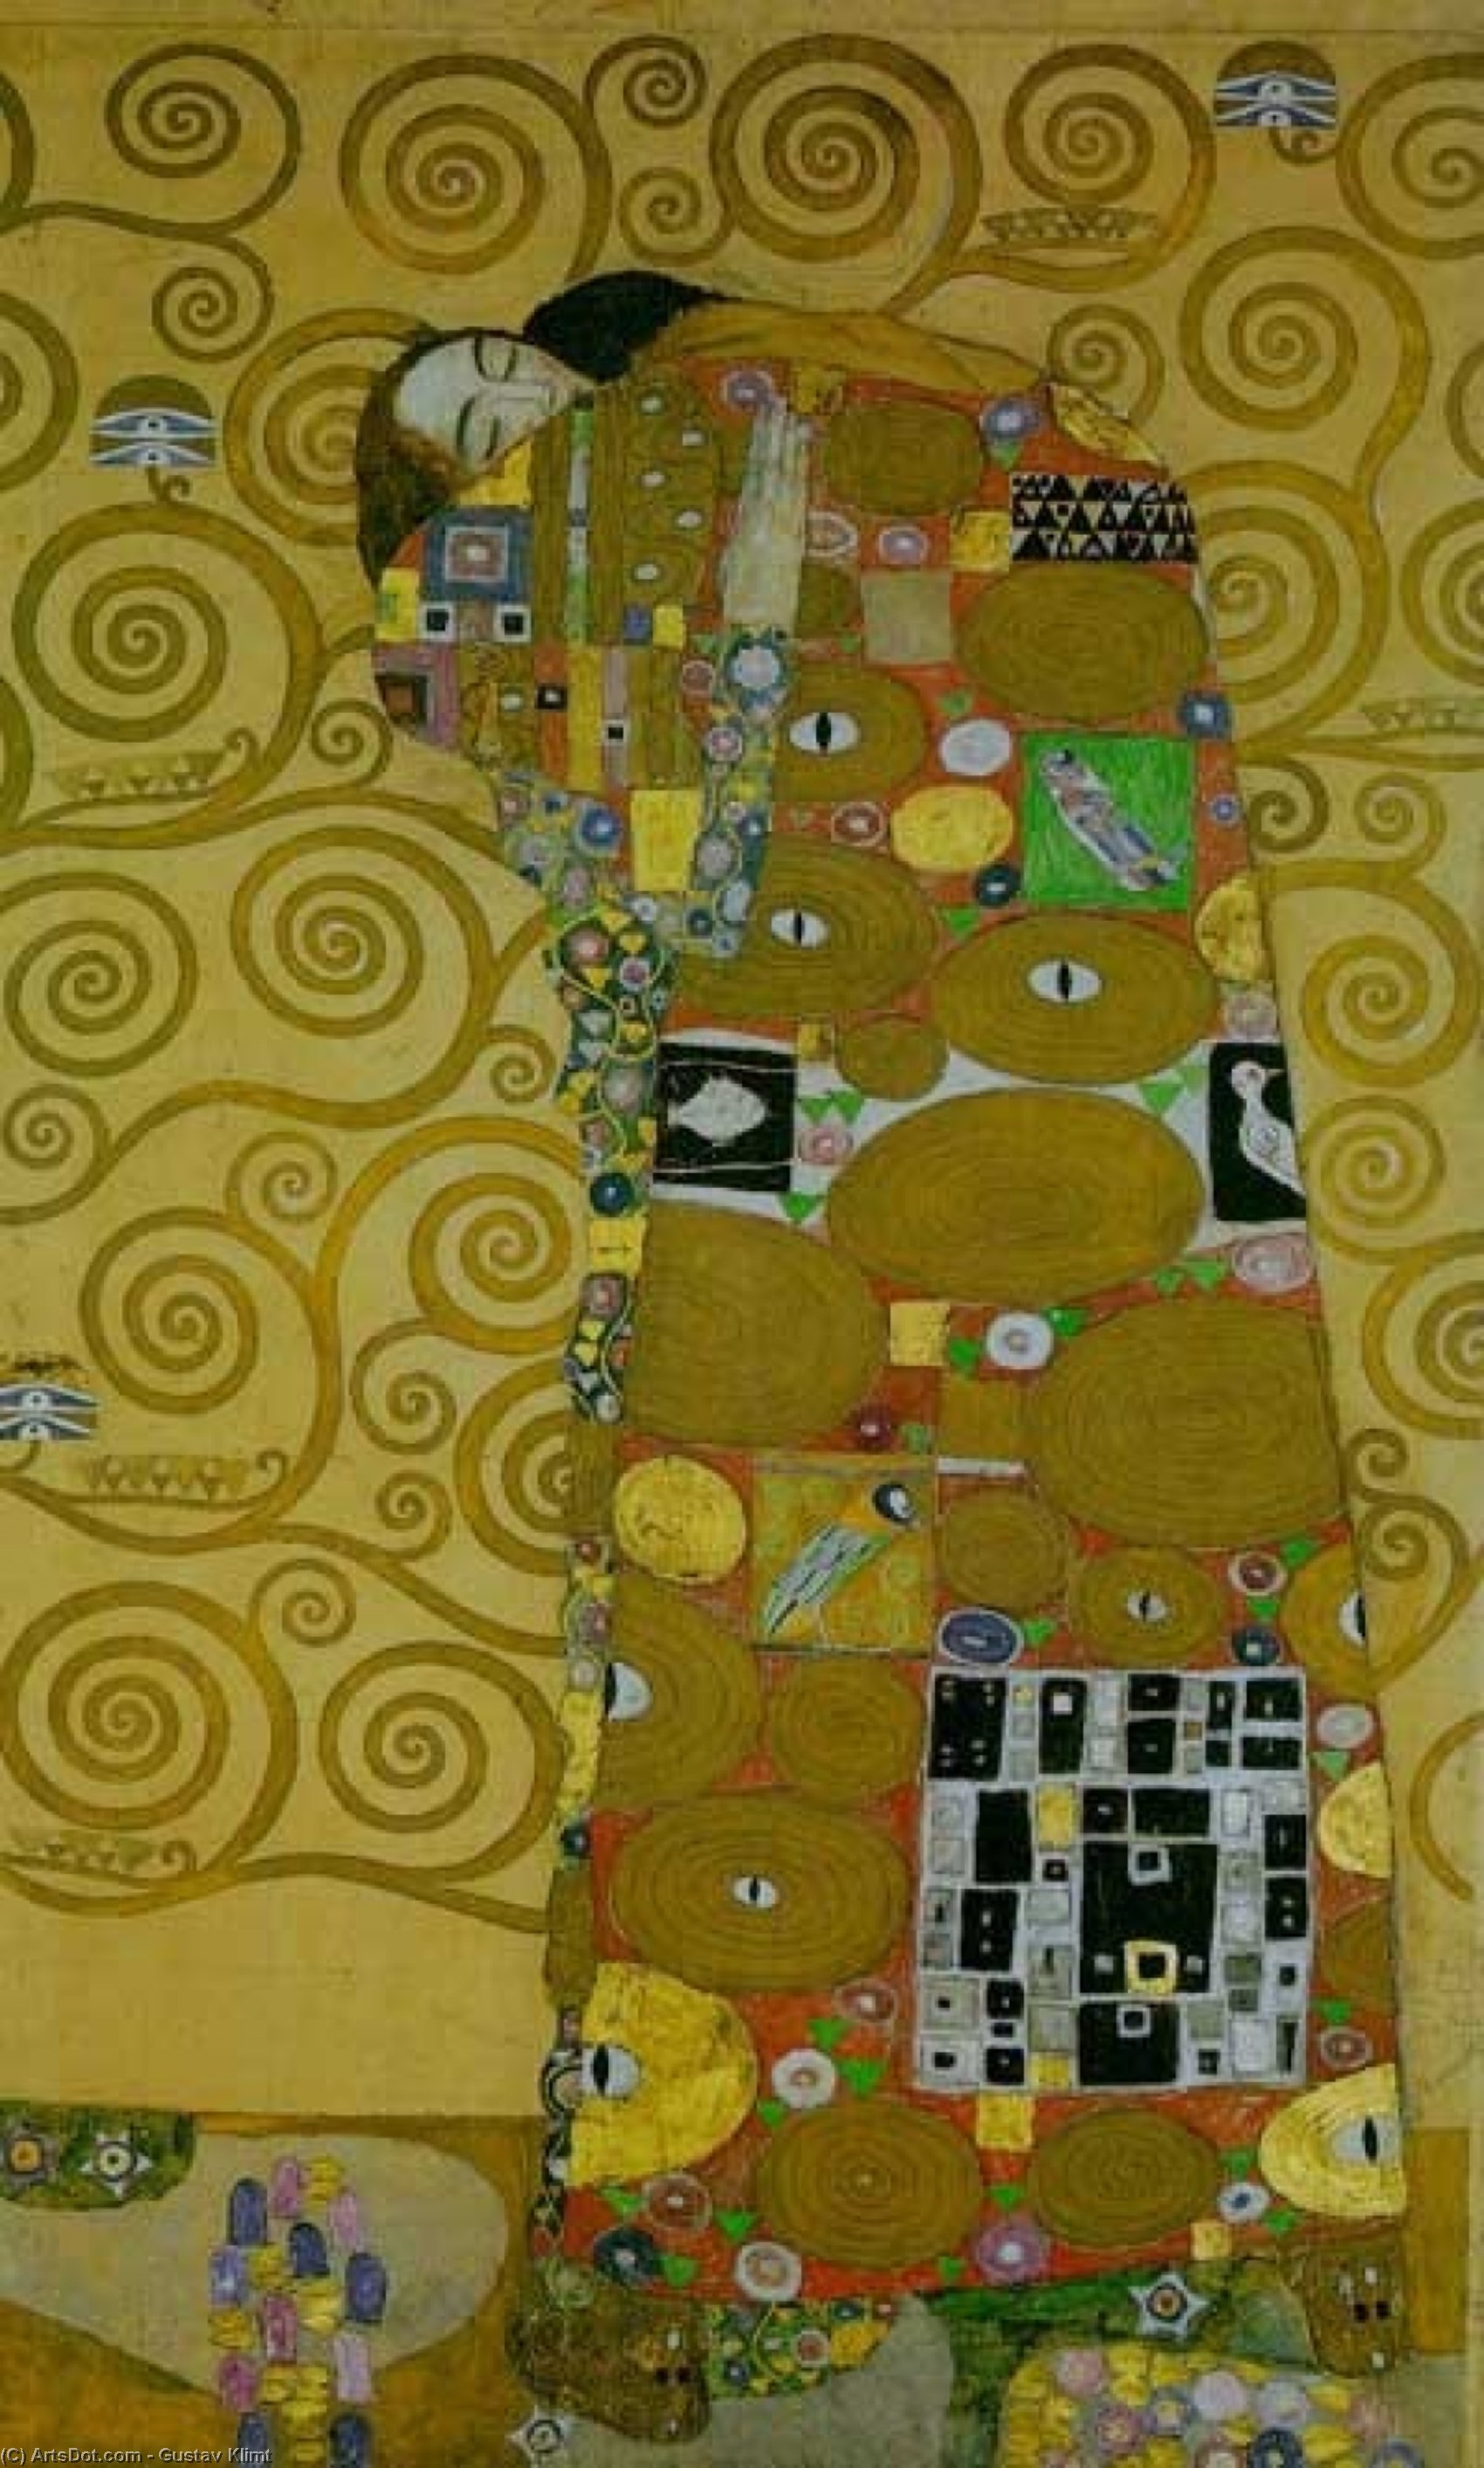 Wikoo.org - موسوعة الفنون الجميلة - اللوحة، العمل الفني Gustav Klimt - Stoclet Frieze Fullfilment, 1905-09 - Vienna, Secession